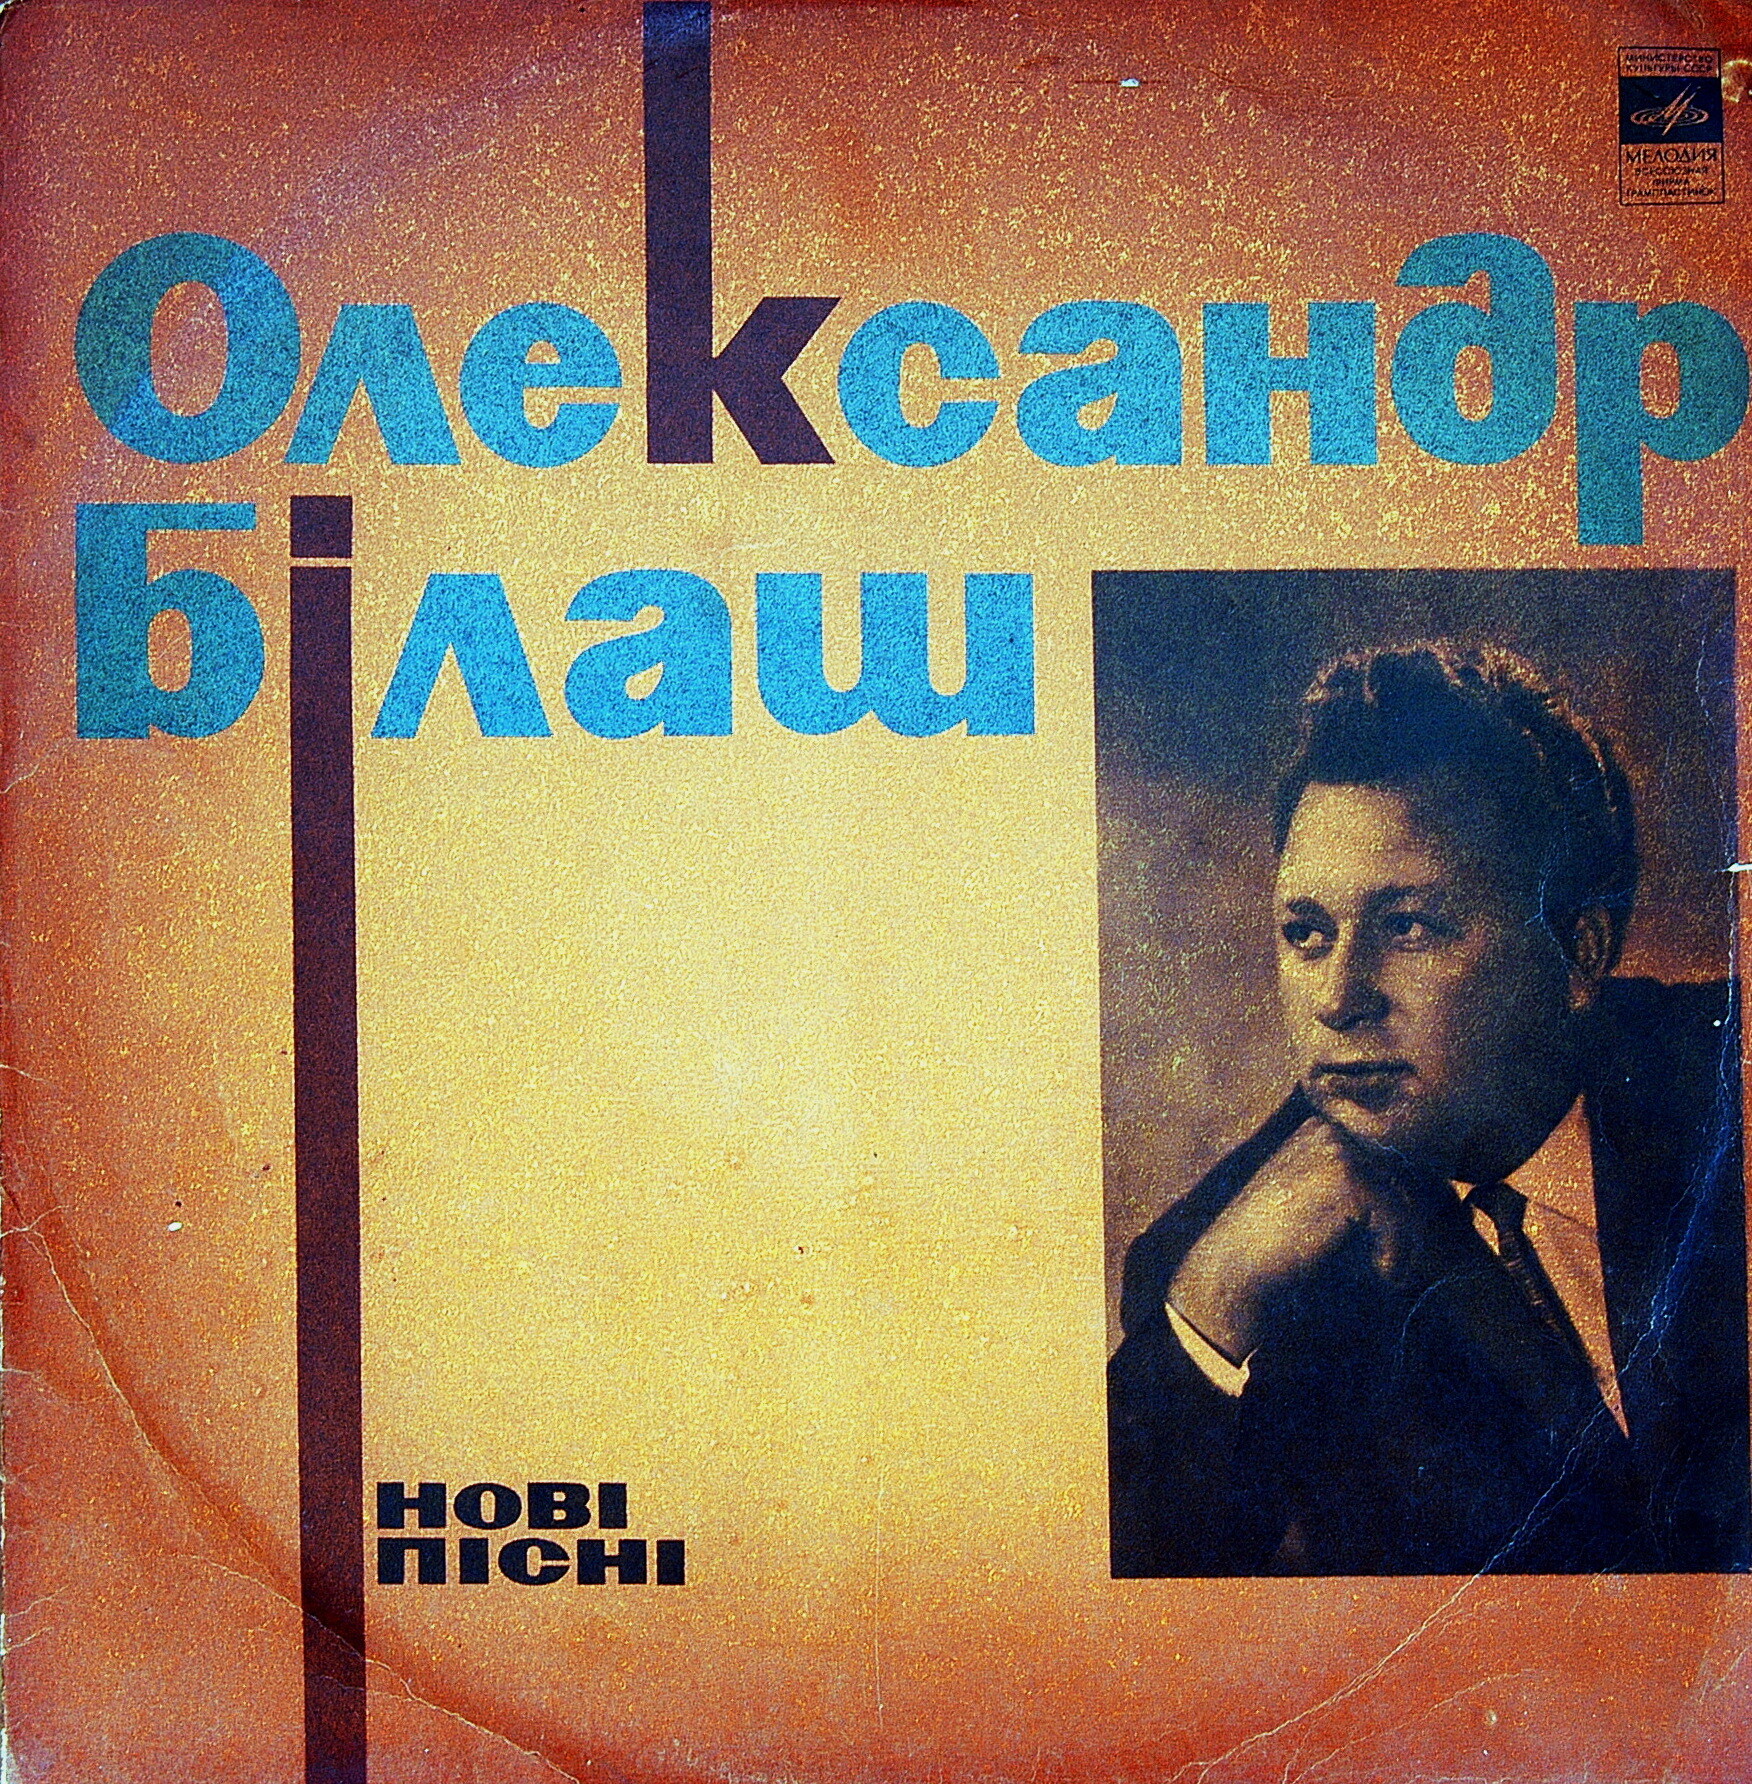 Александр БИЛАШ (1931) — НОВЫЕ ПЕСНИ